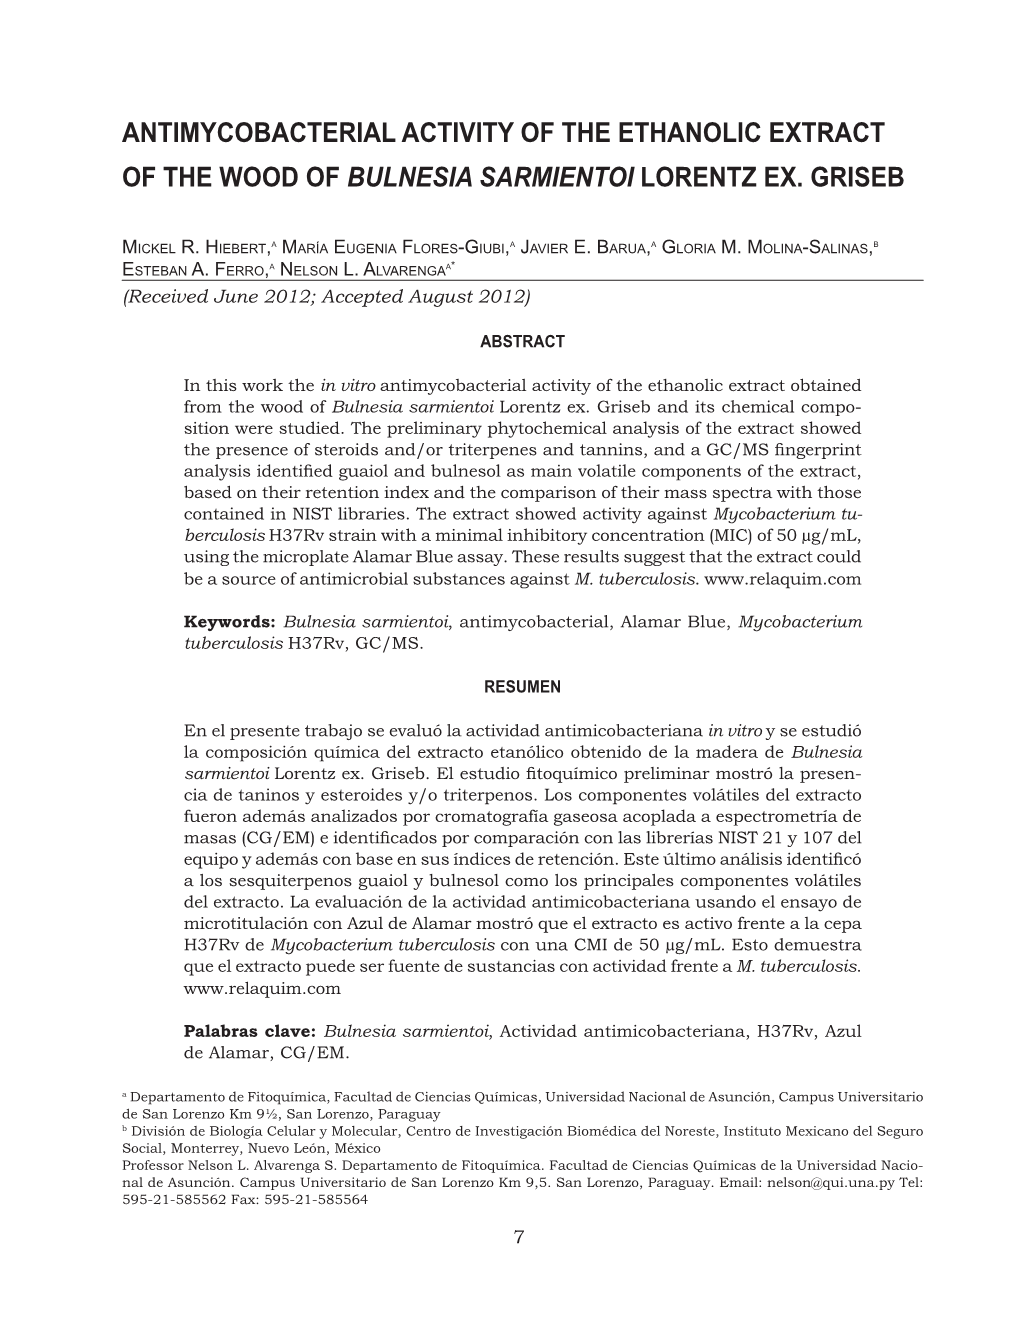 Antimycobacterial Activity of the Ethanolic Extract of the Wood of Bulnesia Sarmientoi Lorentz Ex